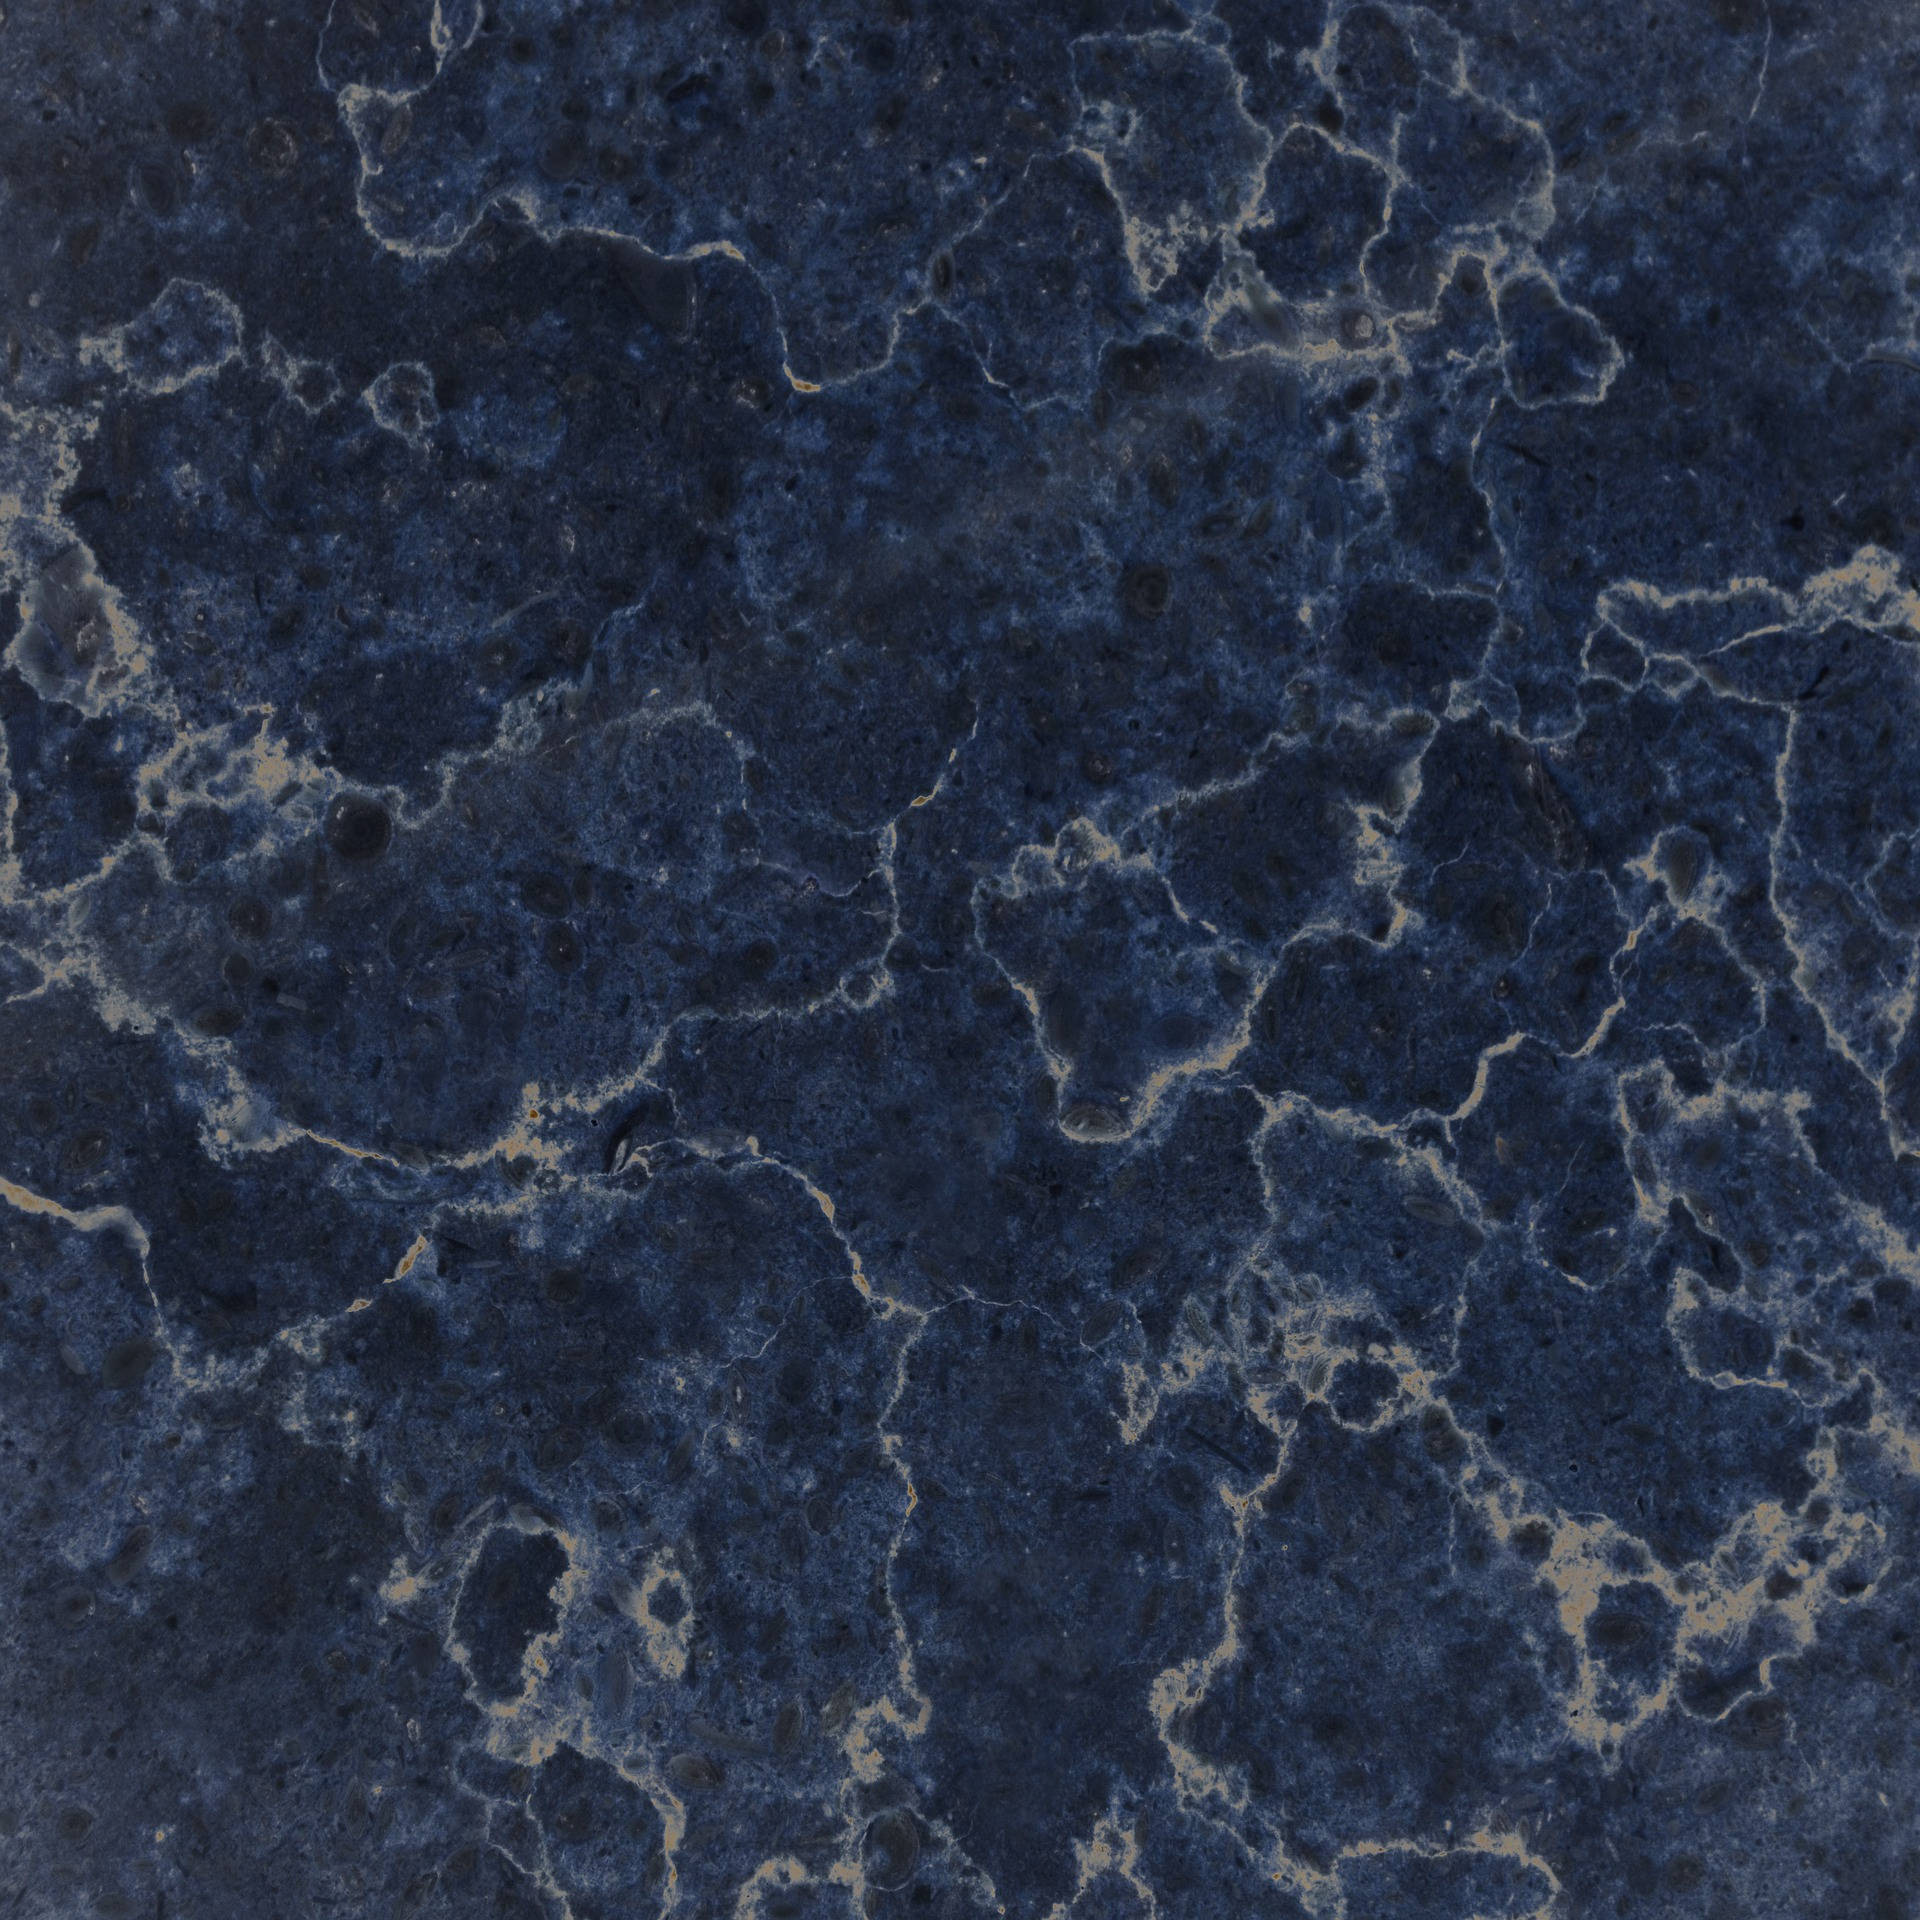 Textured Dark Blue Marble Laptop Wallpaper